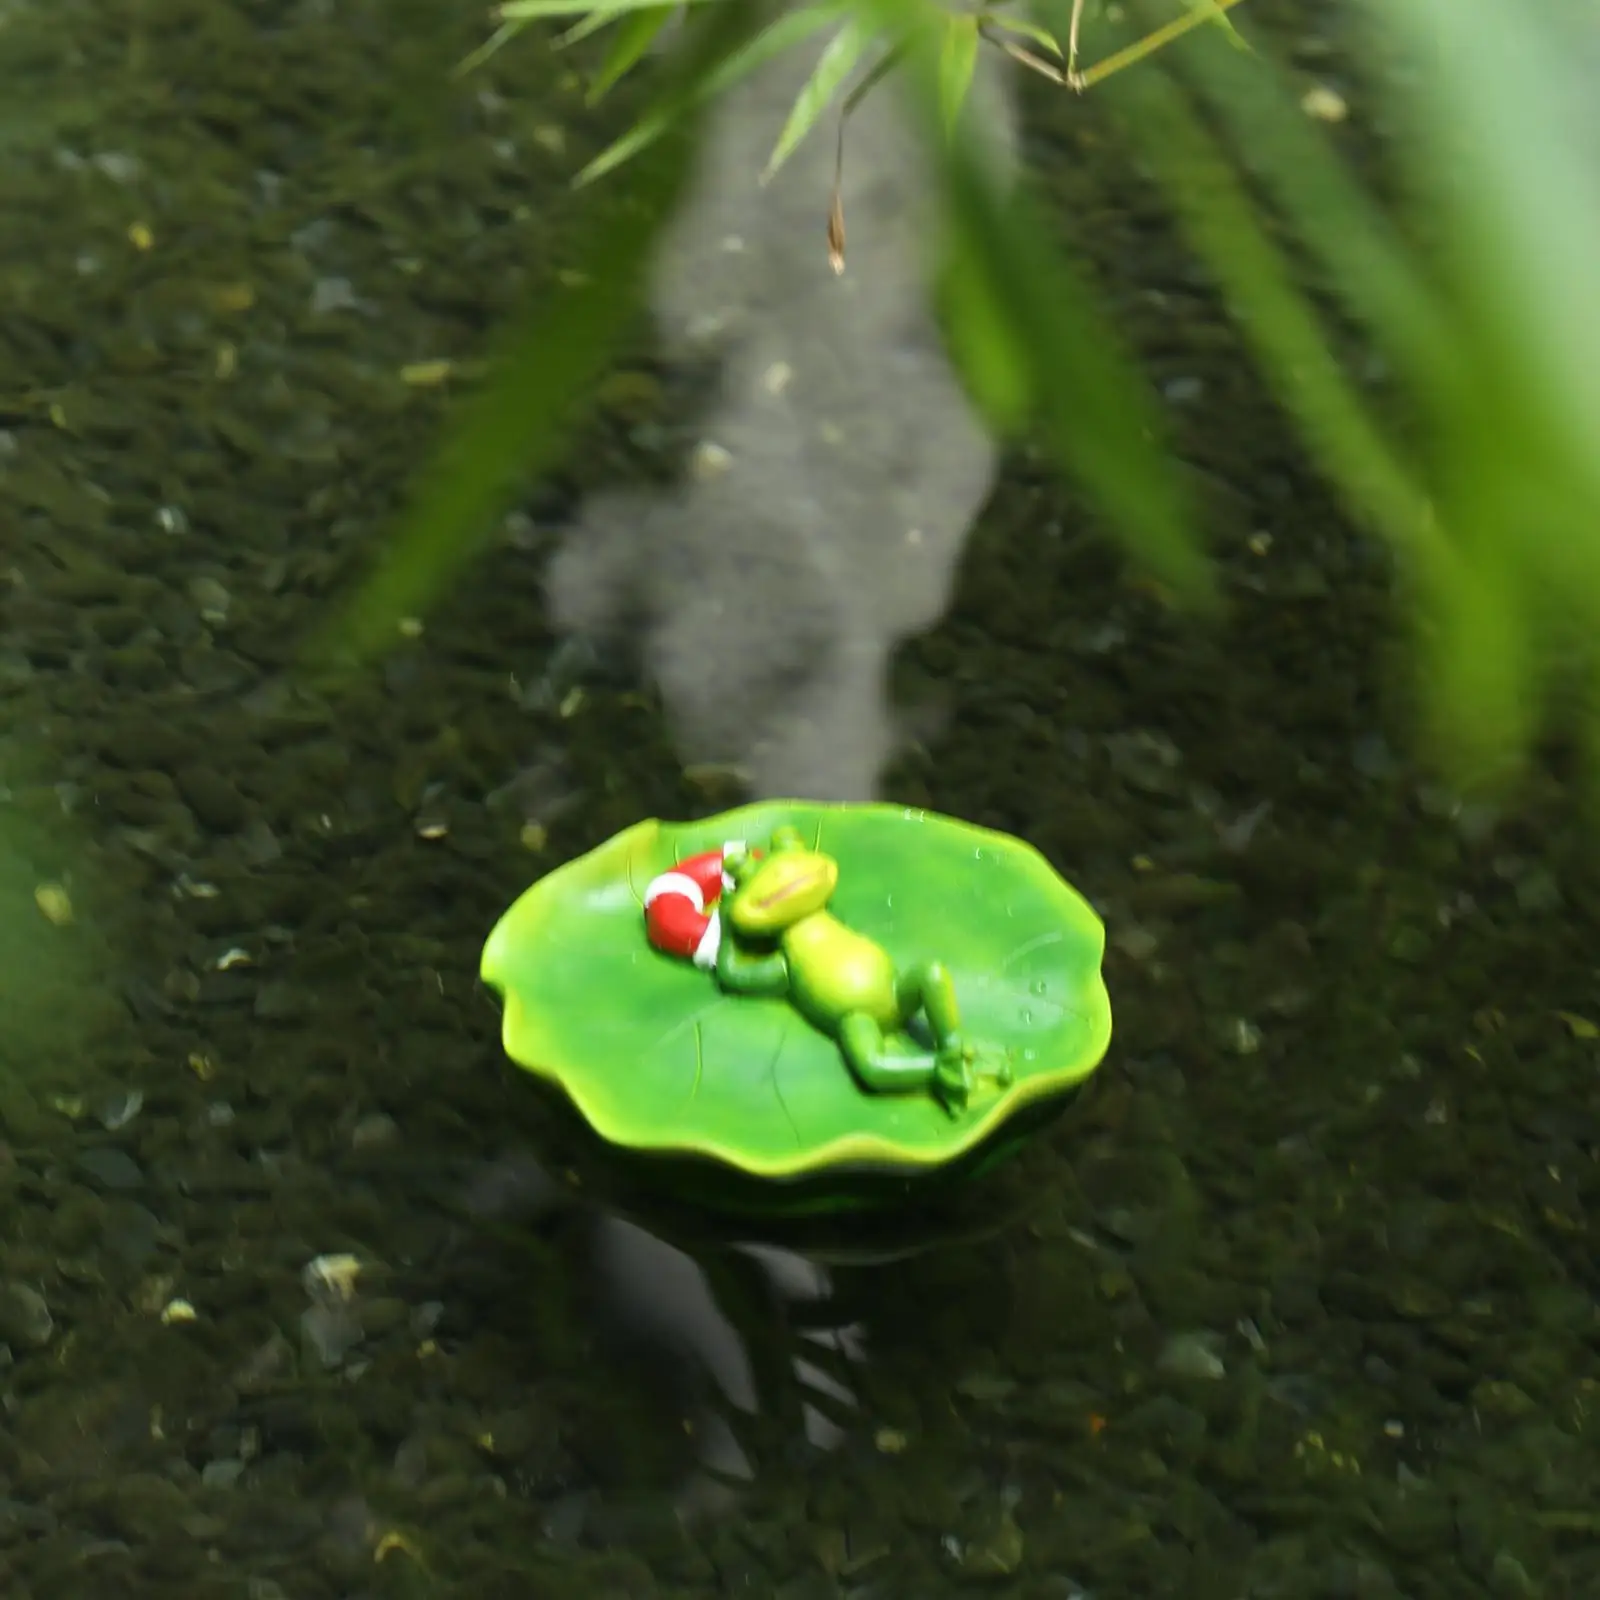 Floating Frog on Leaf Ornaments Animals Figurine Garden Statue Gift for Desk